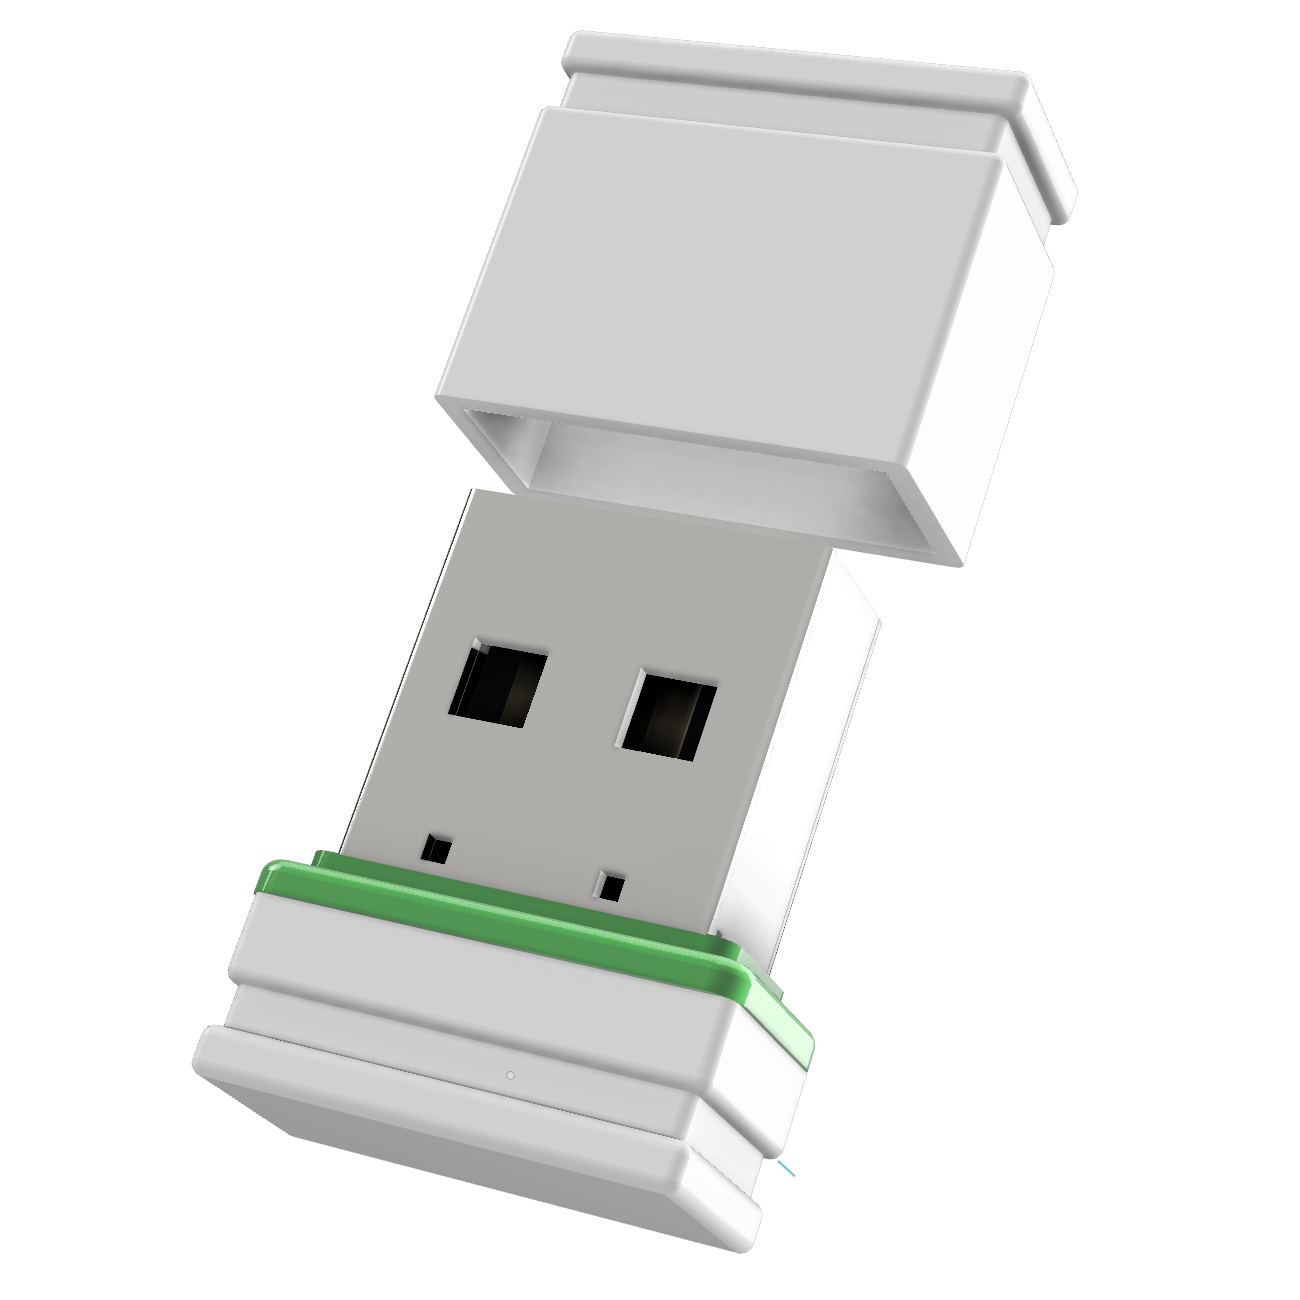 (Weiss/Grün, GERMANY ®ULTRA 2 P1 GB) Mini USB USB-Stick